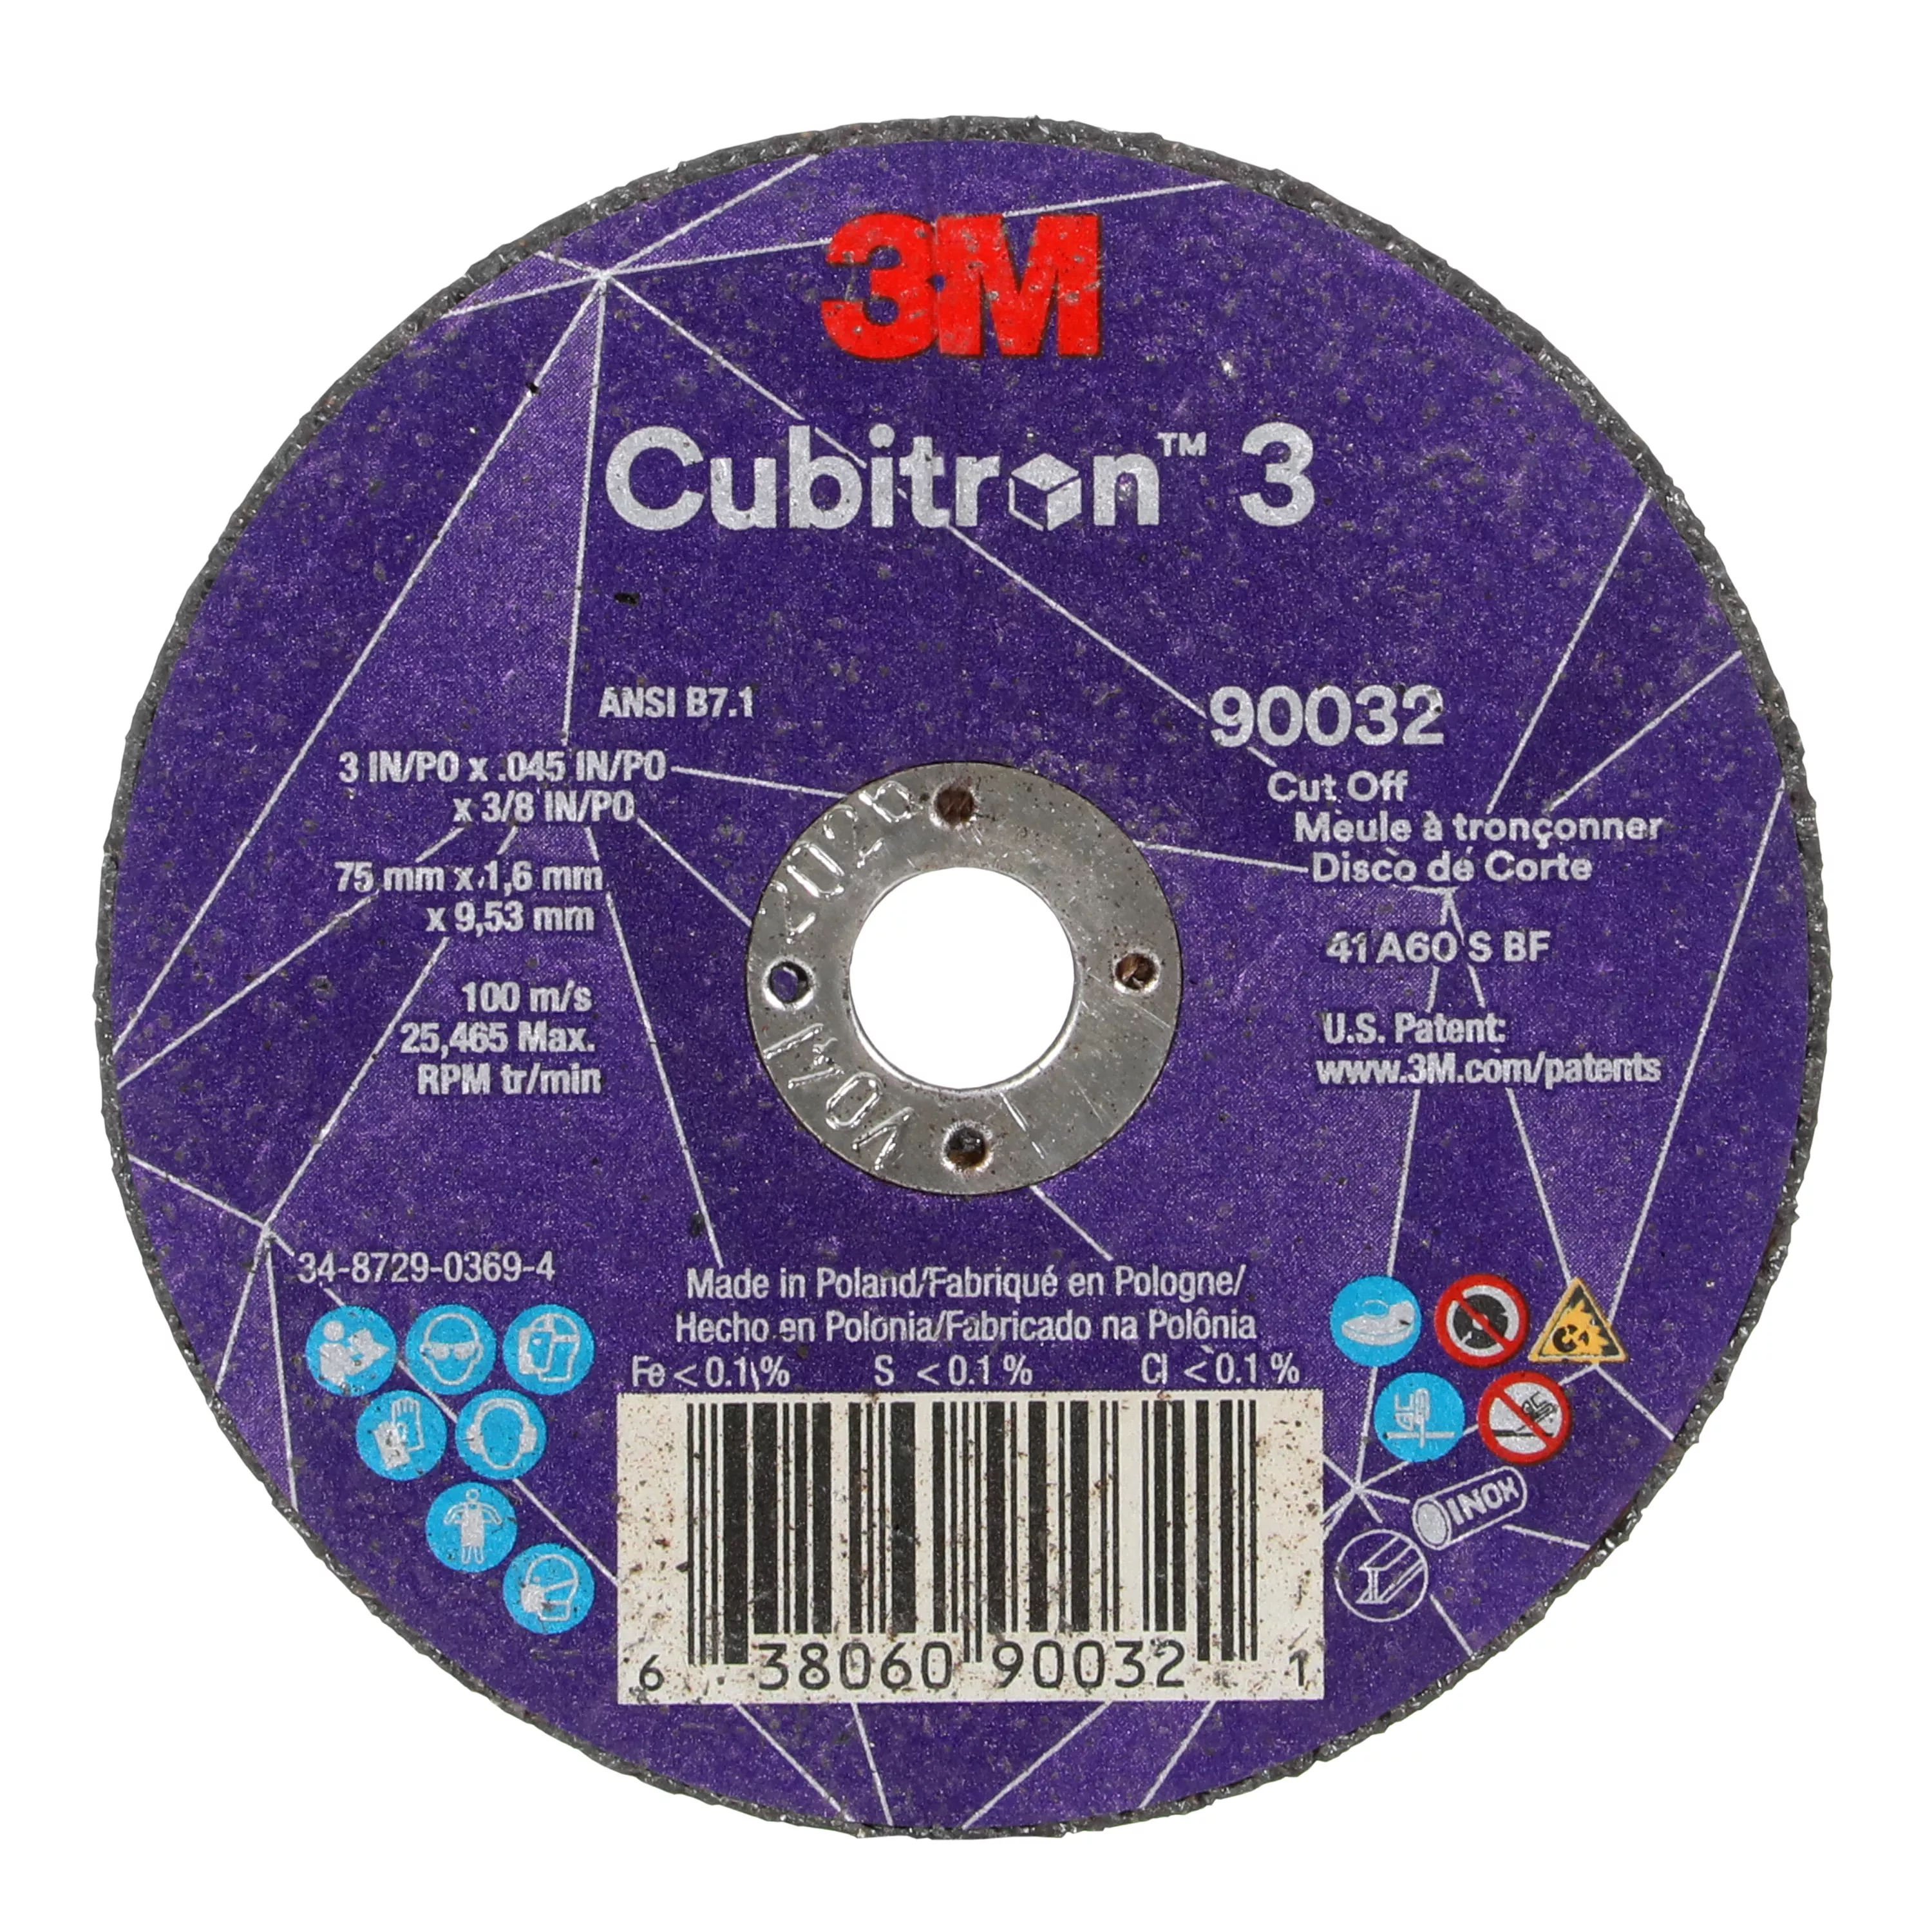 3M™ Cubitron™ 3 Cut-Off Wheel, 90032, 60+, T1, 3 in x 0.045 in x 3/8 in
(75 x 1.6 x 9.53 mm), ANSI, 25/Pack, 50 ea/Case